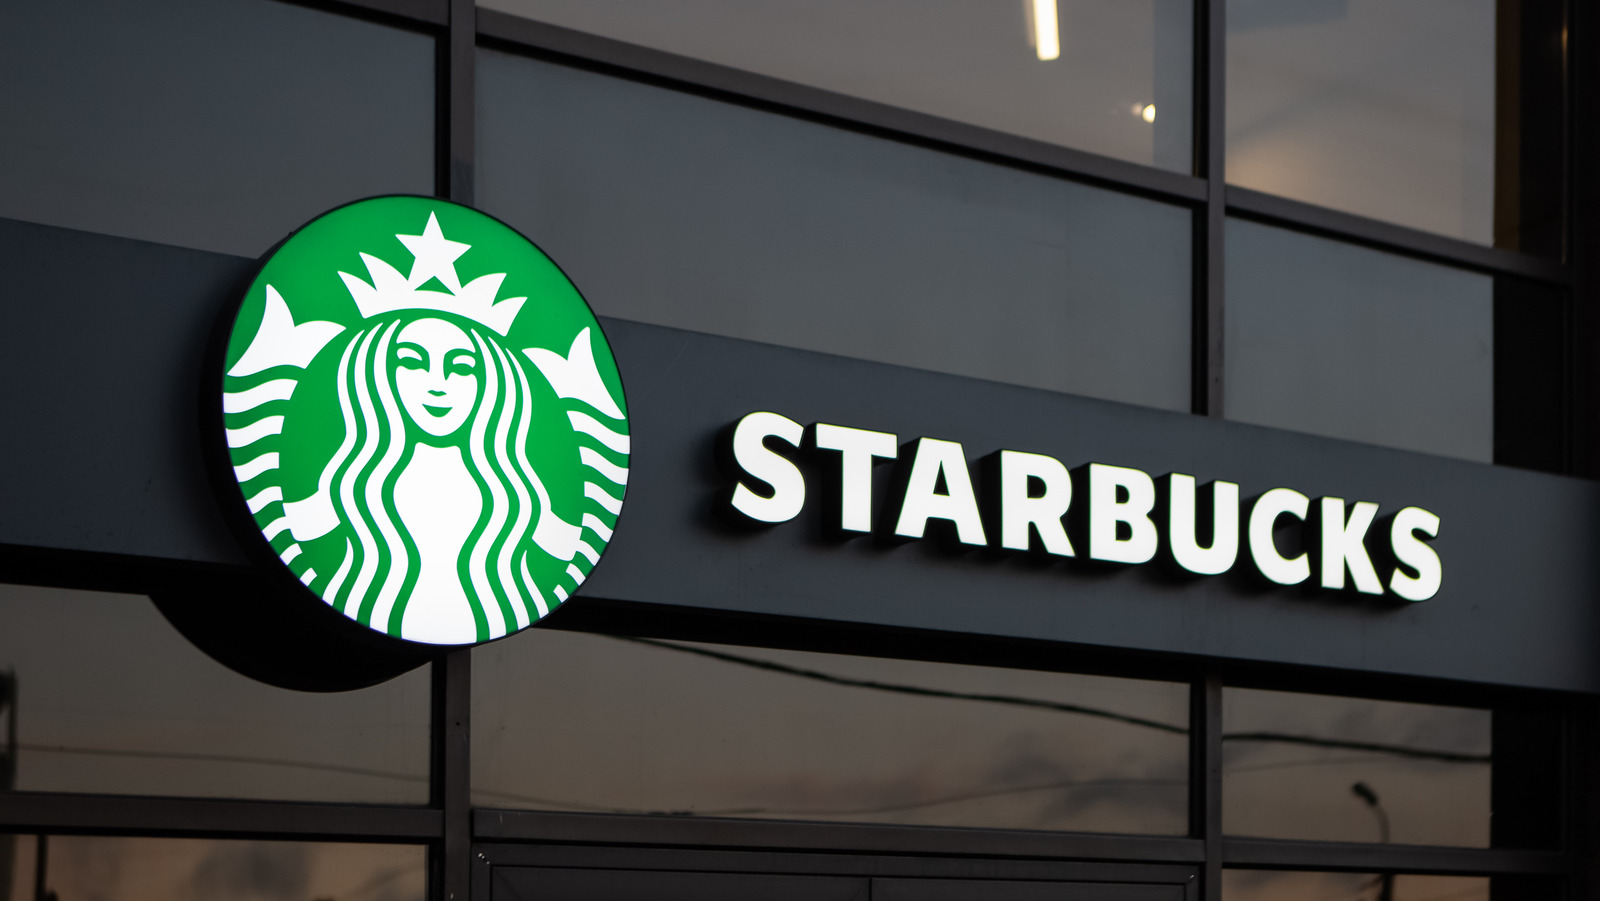 O detalhe oculto sobre a Starbucks que você nunca percebeu